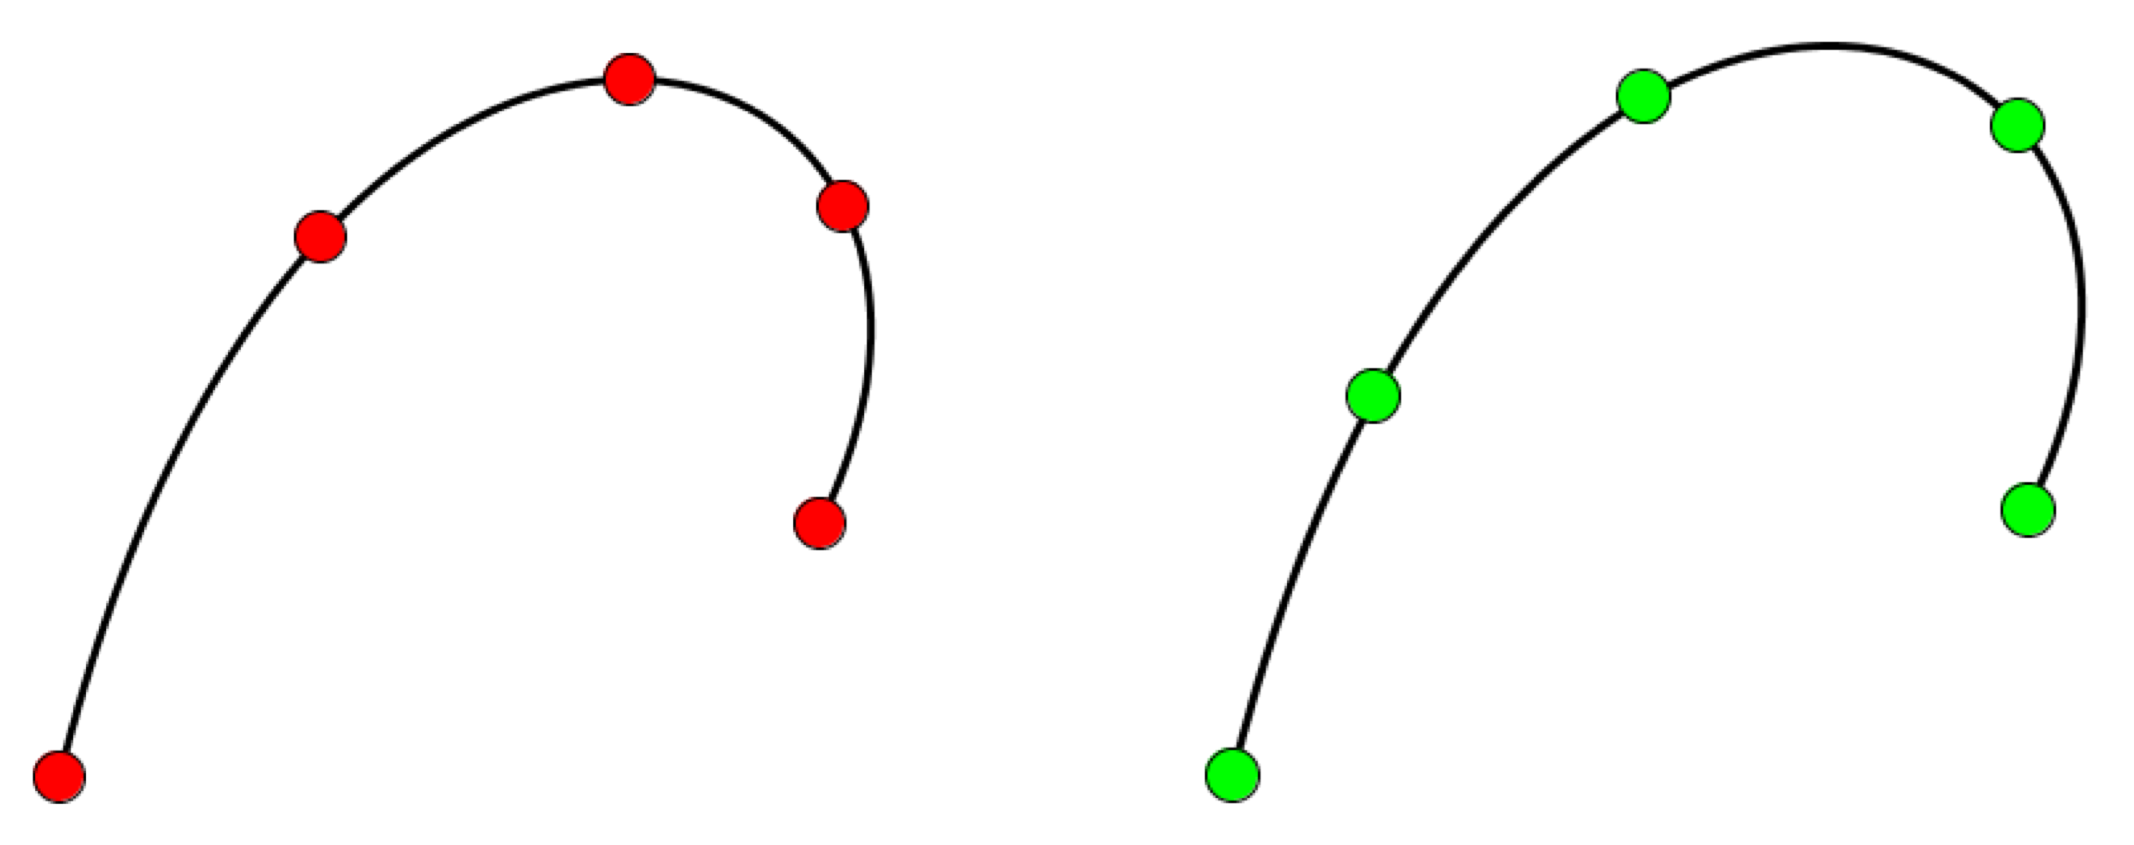 points along a Bezier curve